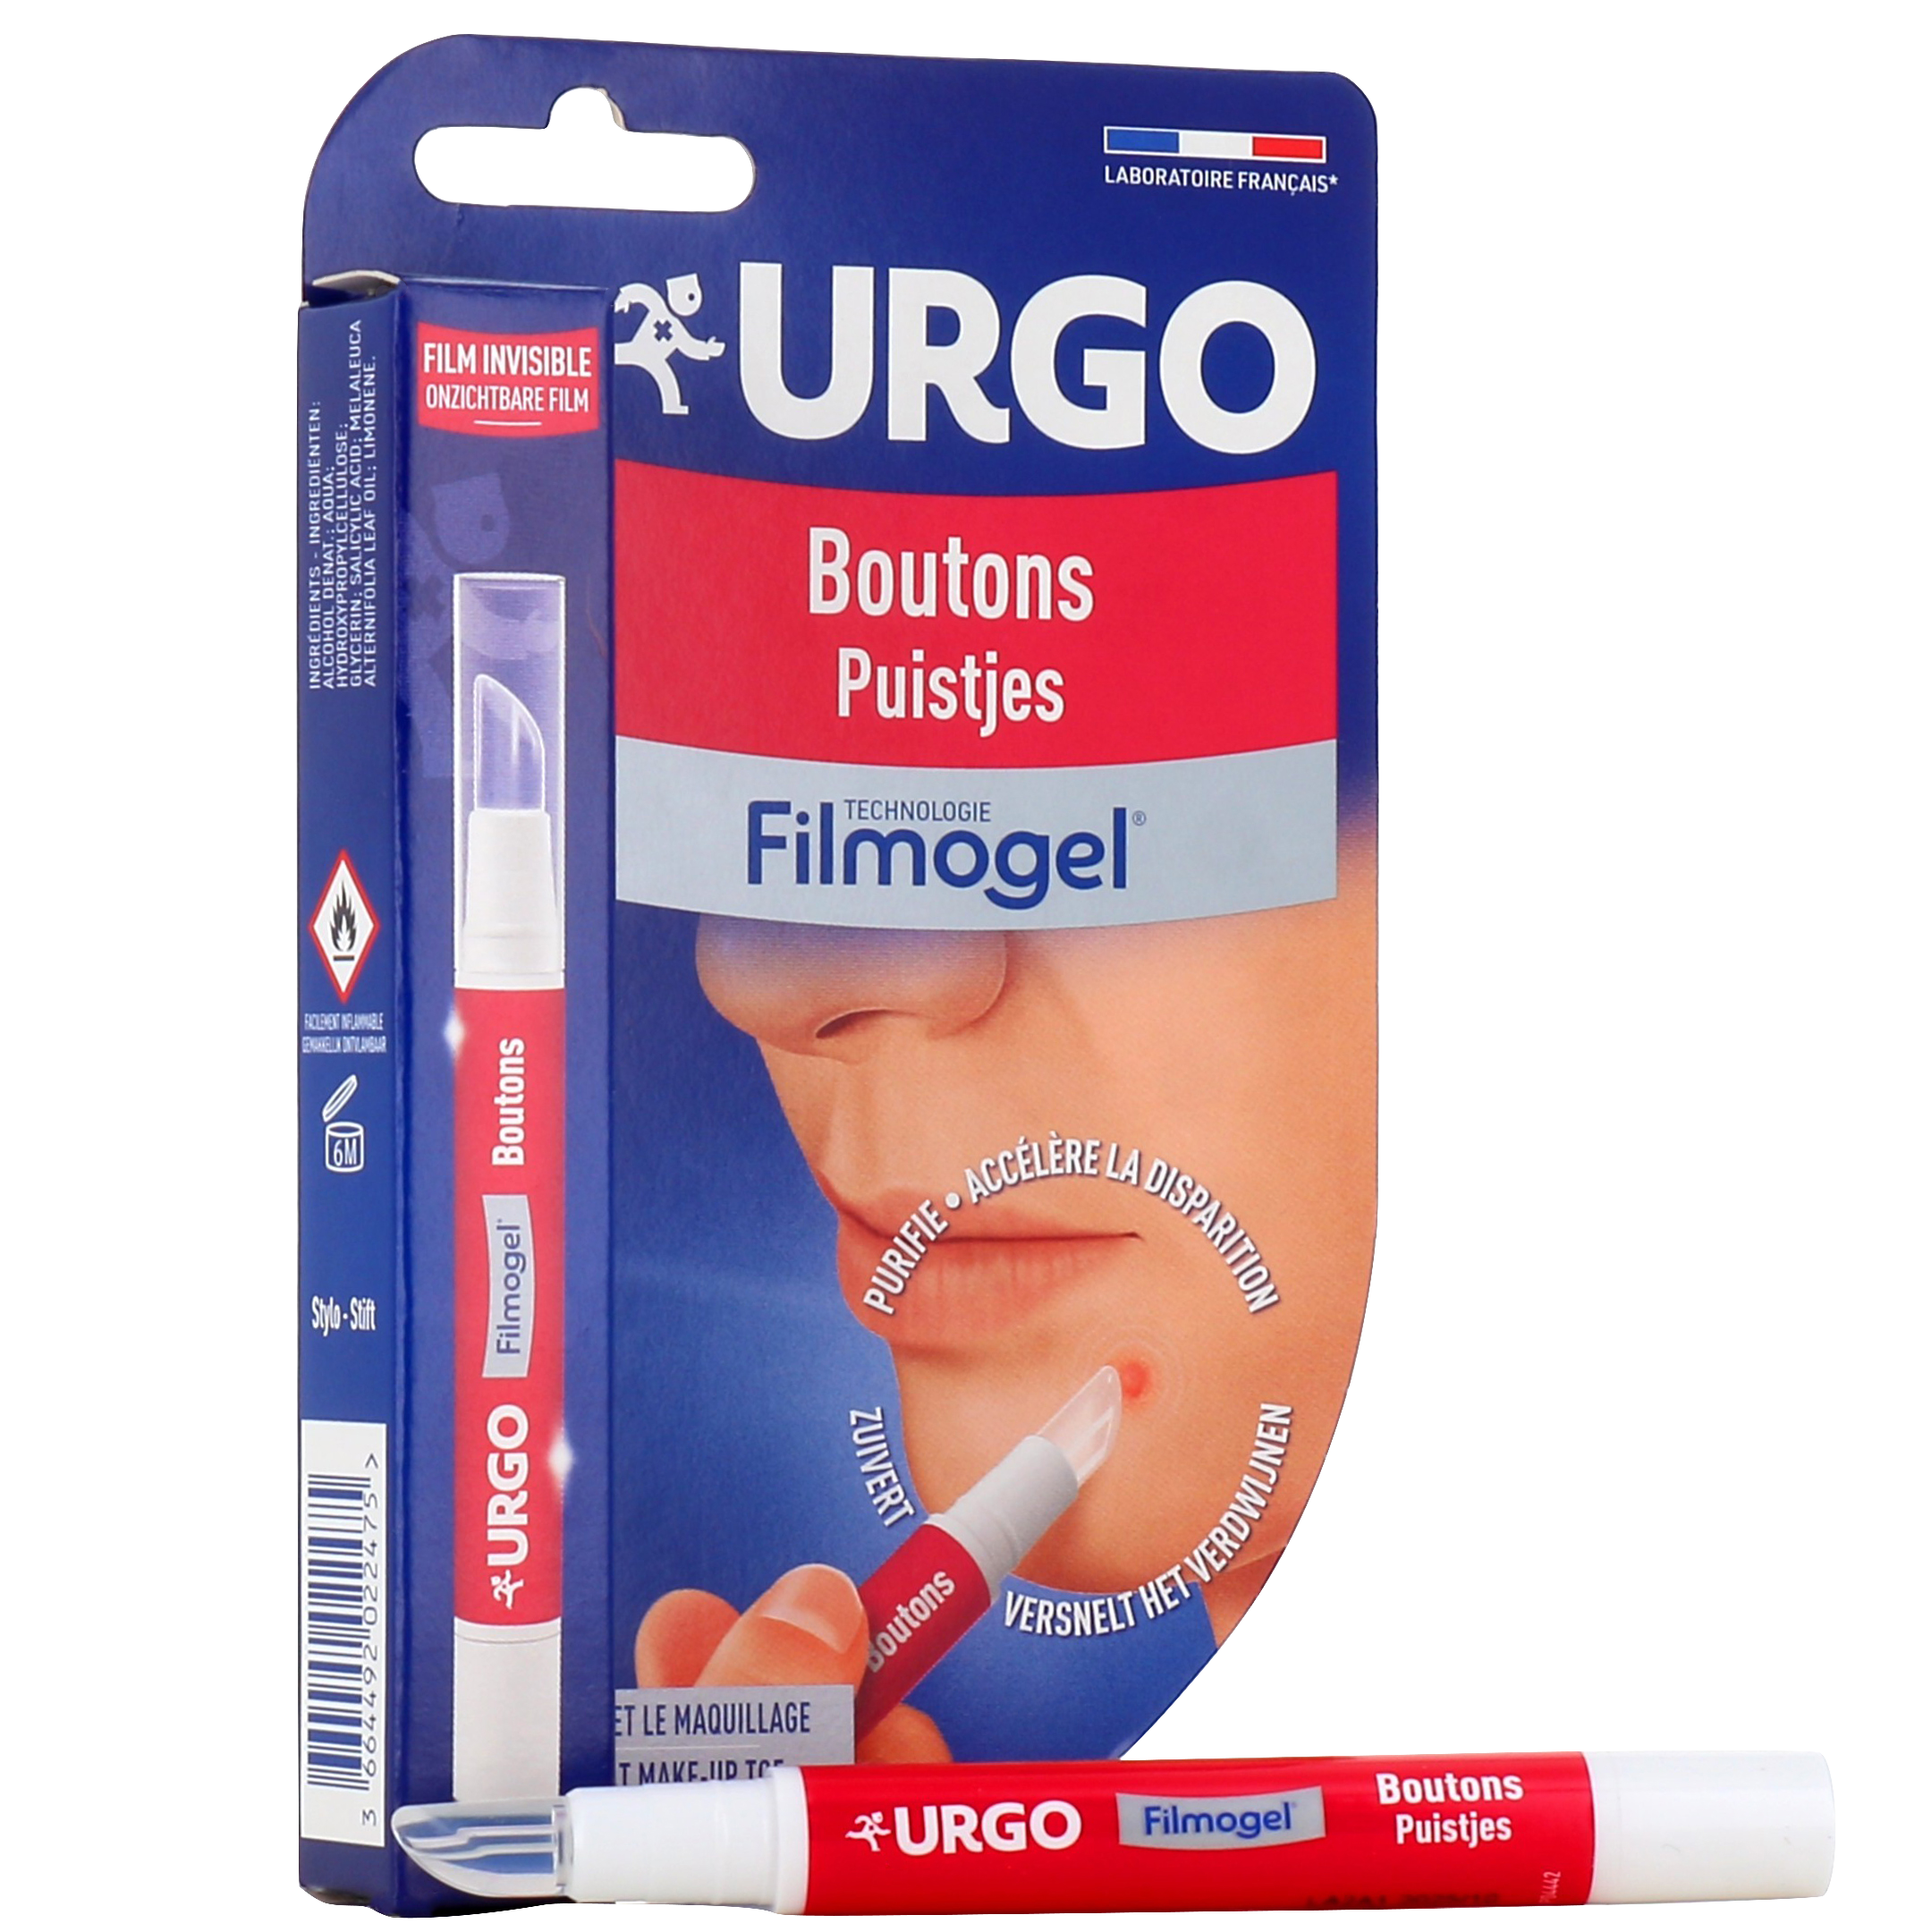 Urgo Filmogel boutons stylo - Acné - Cicatrisation bouton